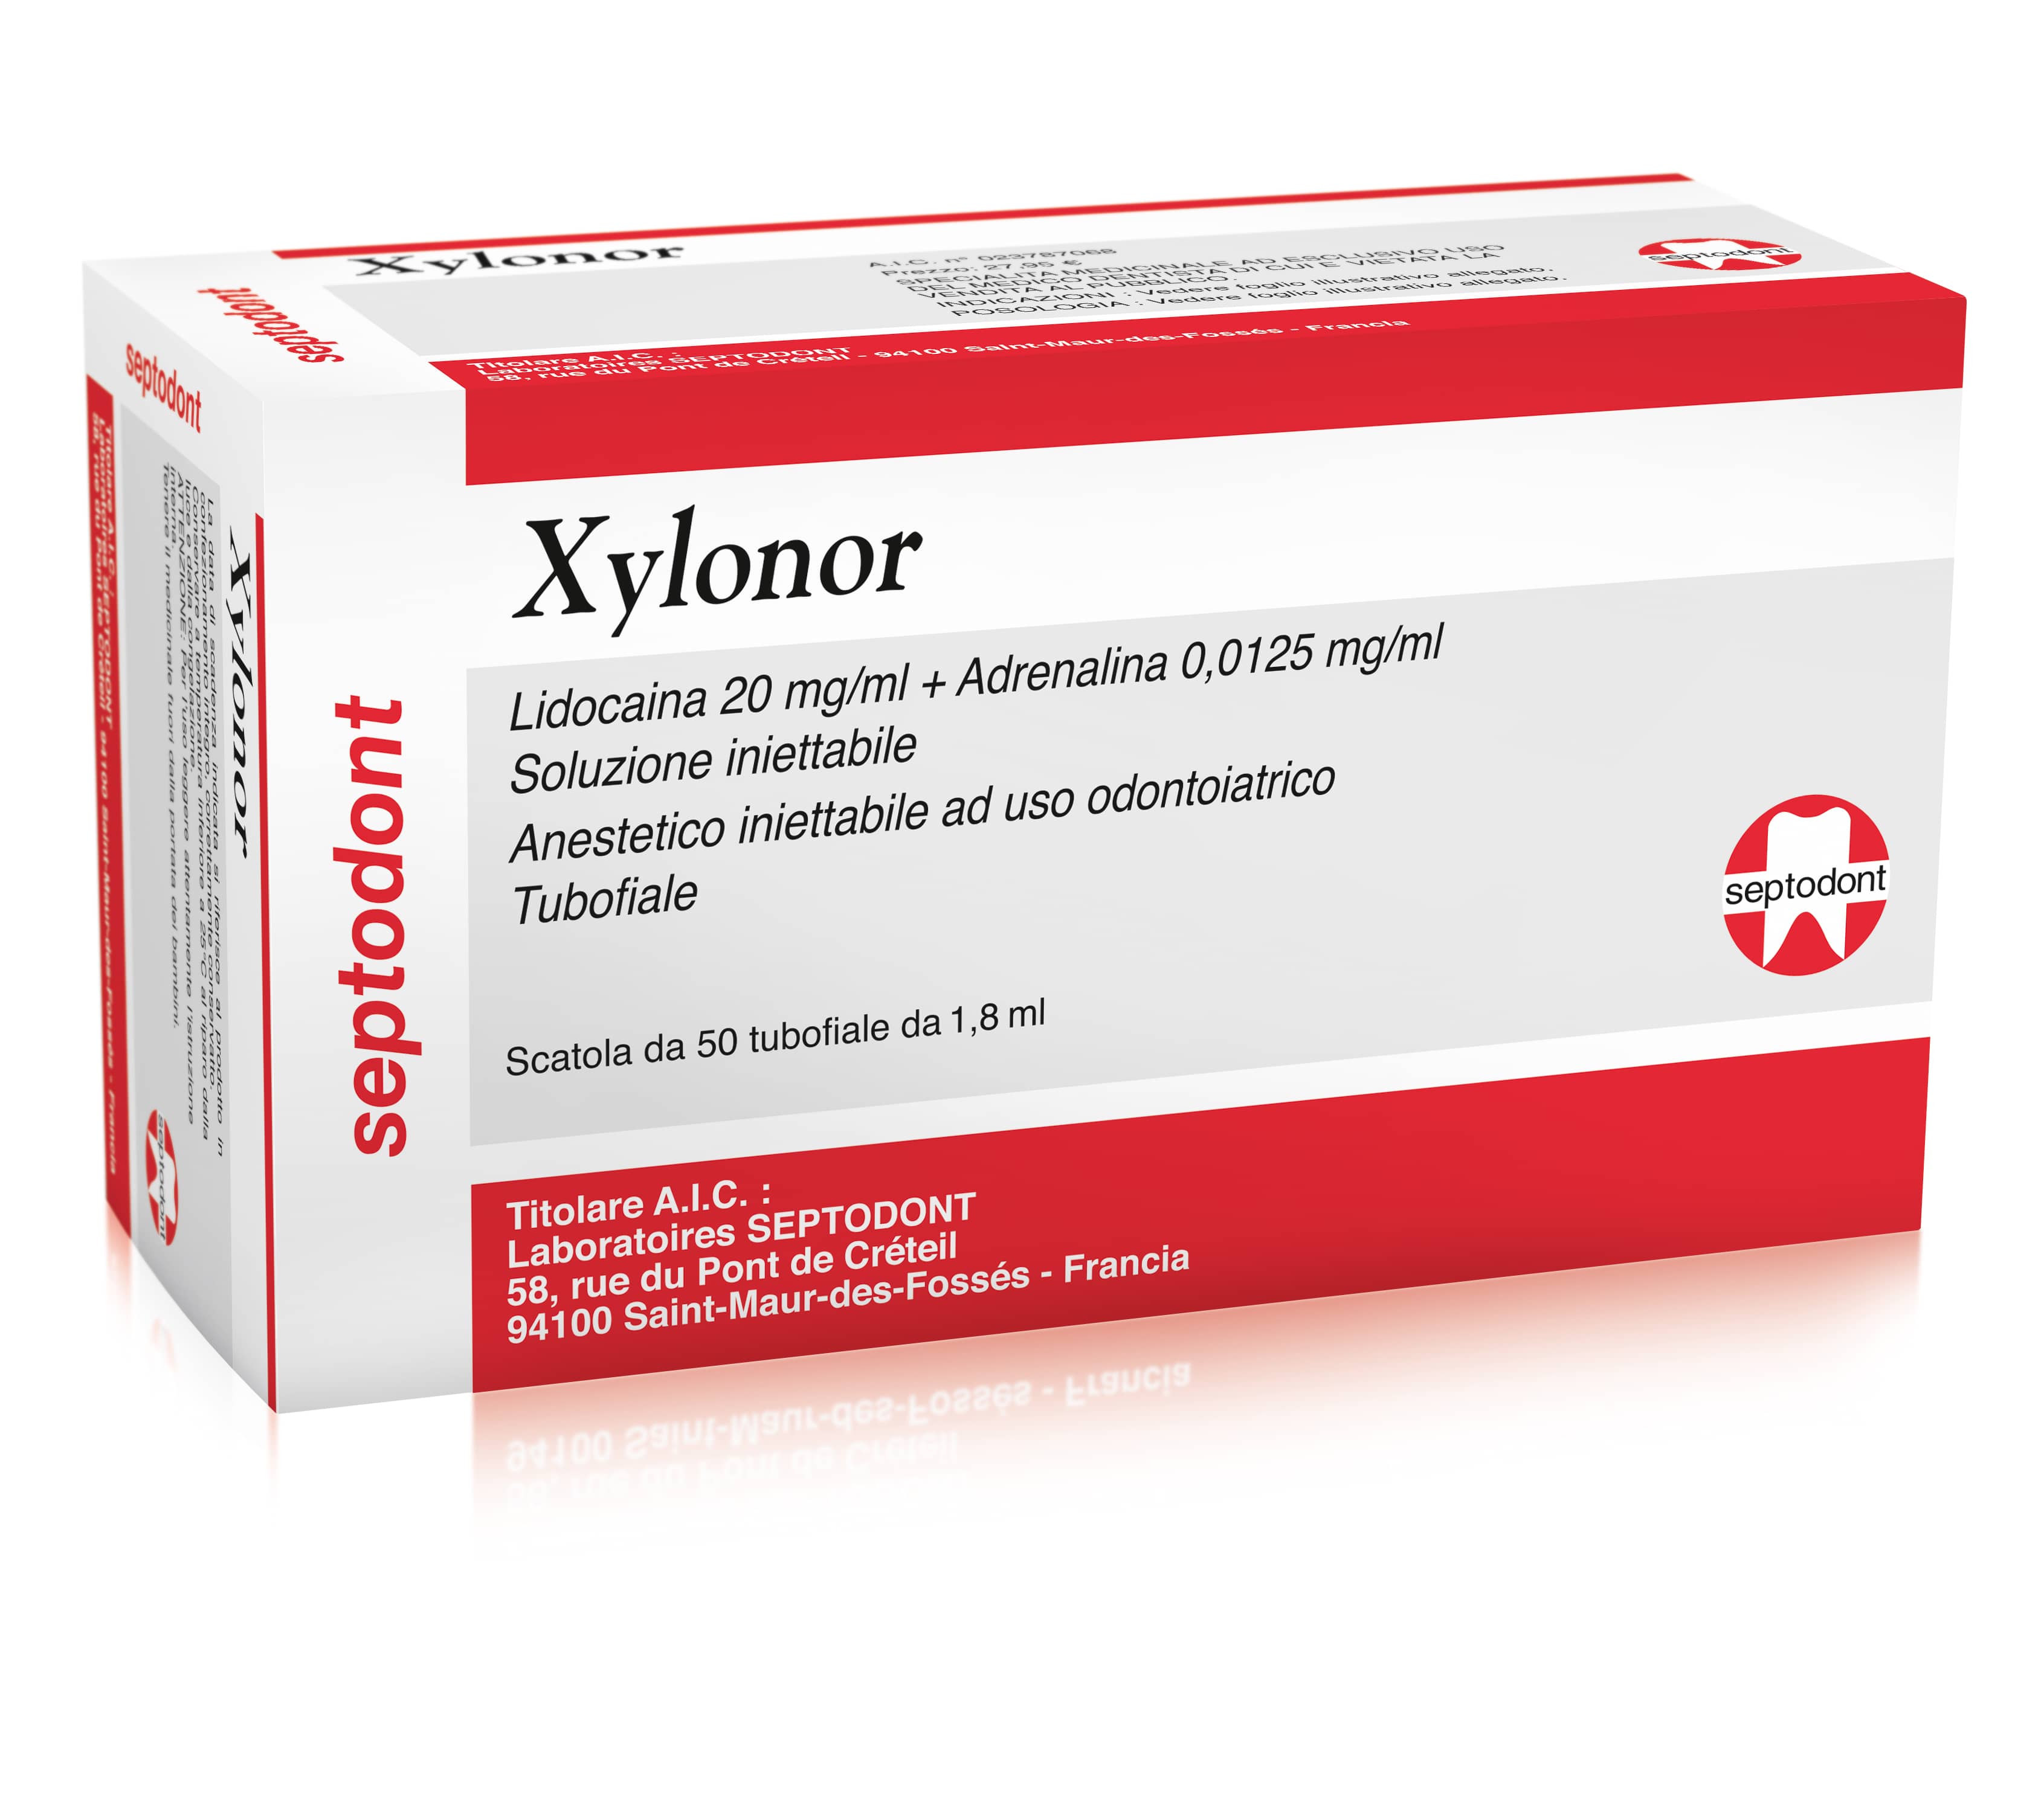 Anestetici - Xylonor 1:80.000 tubofiala